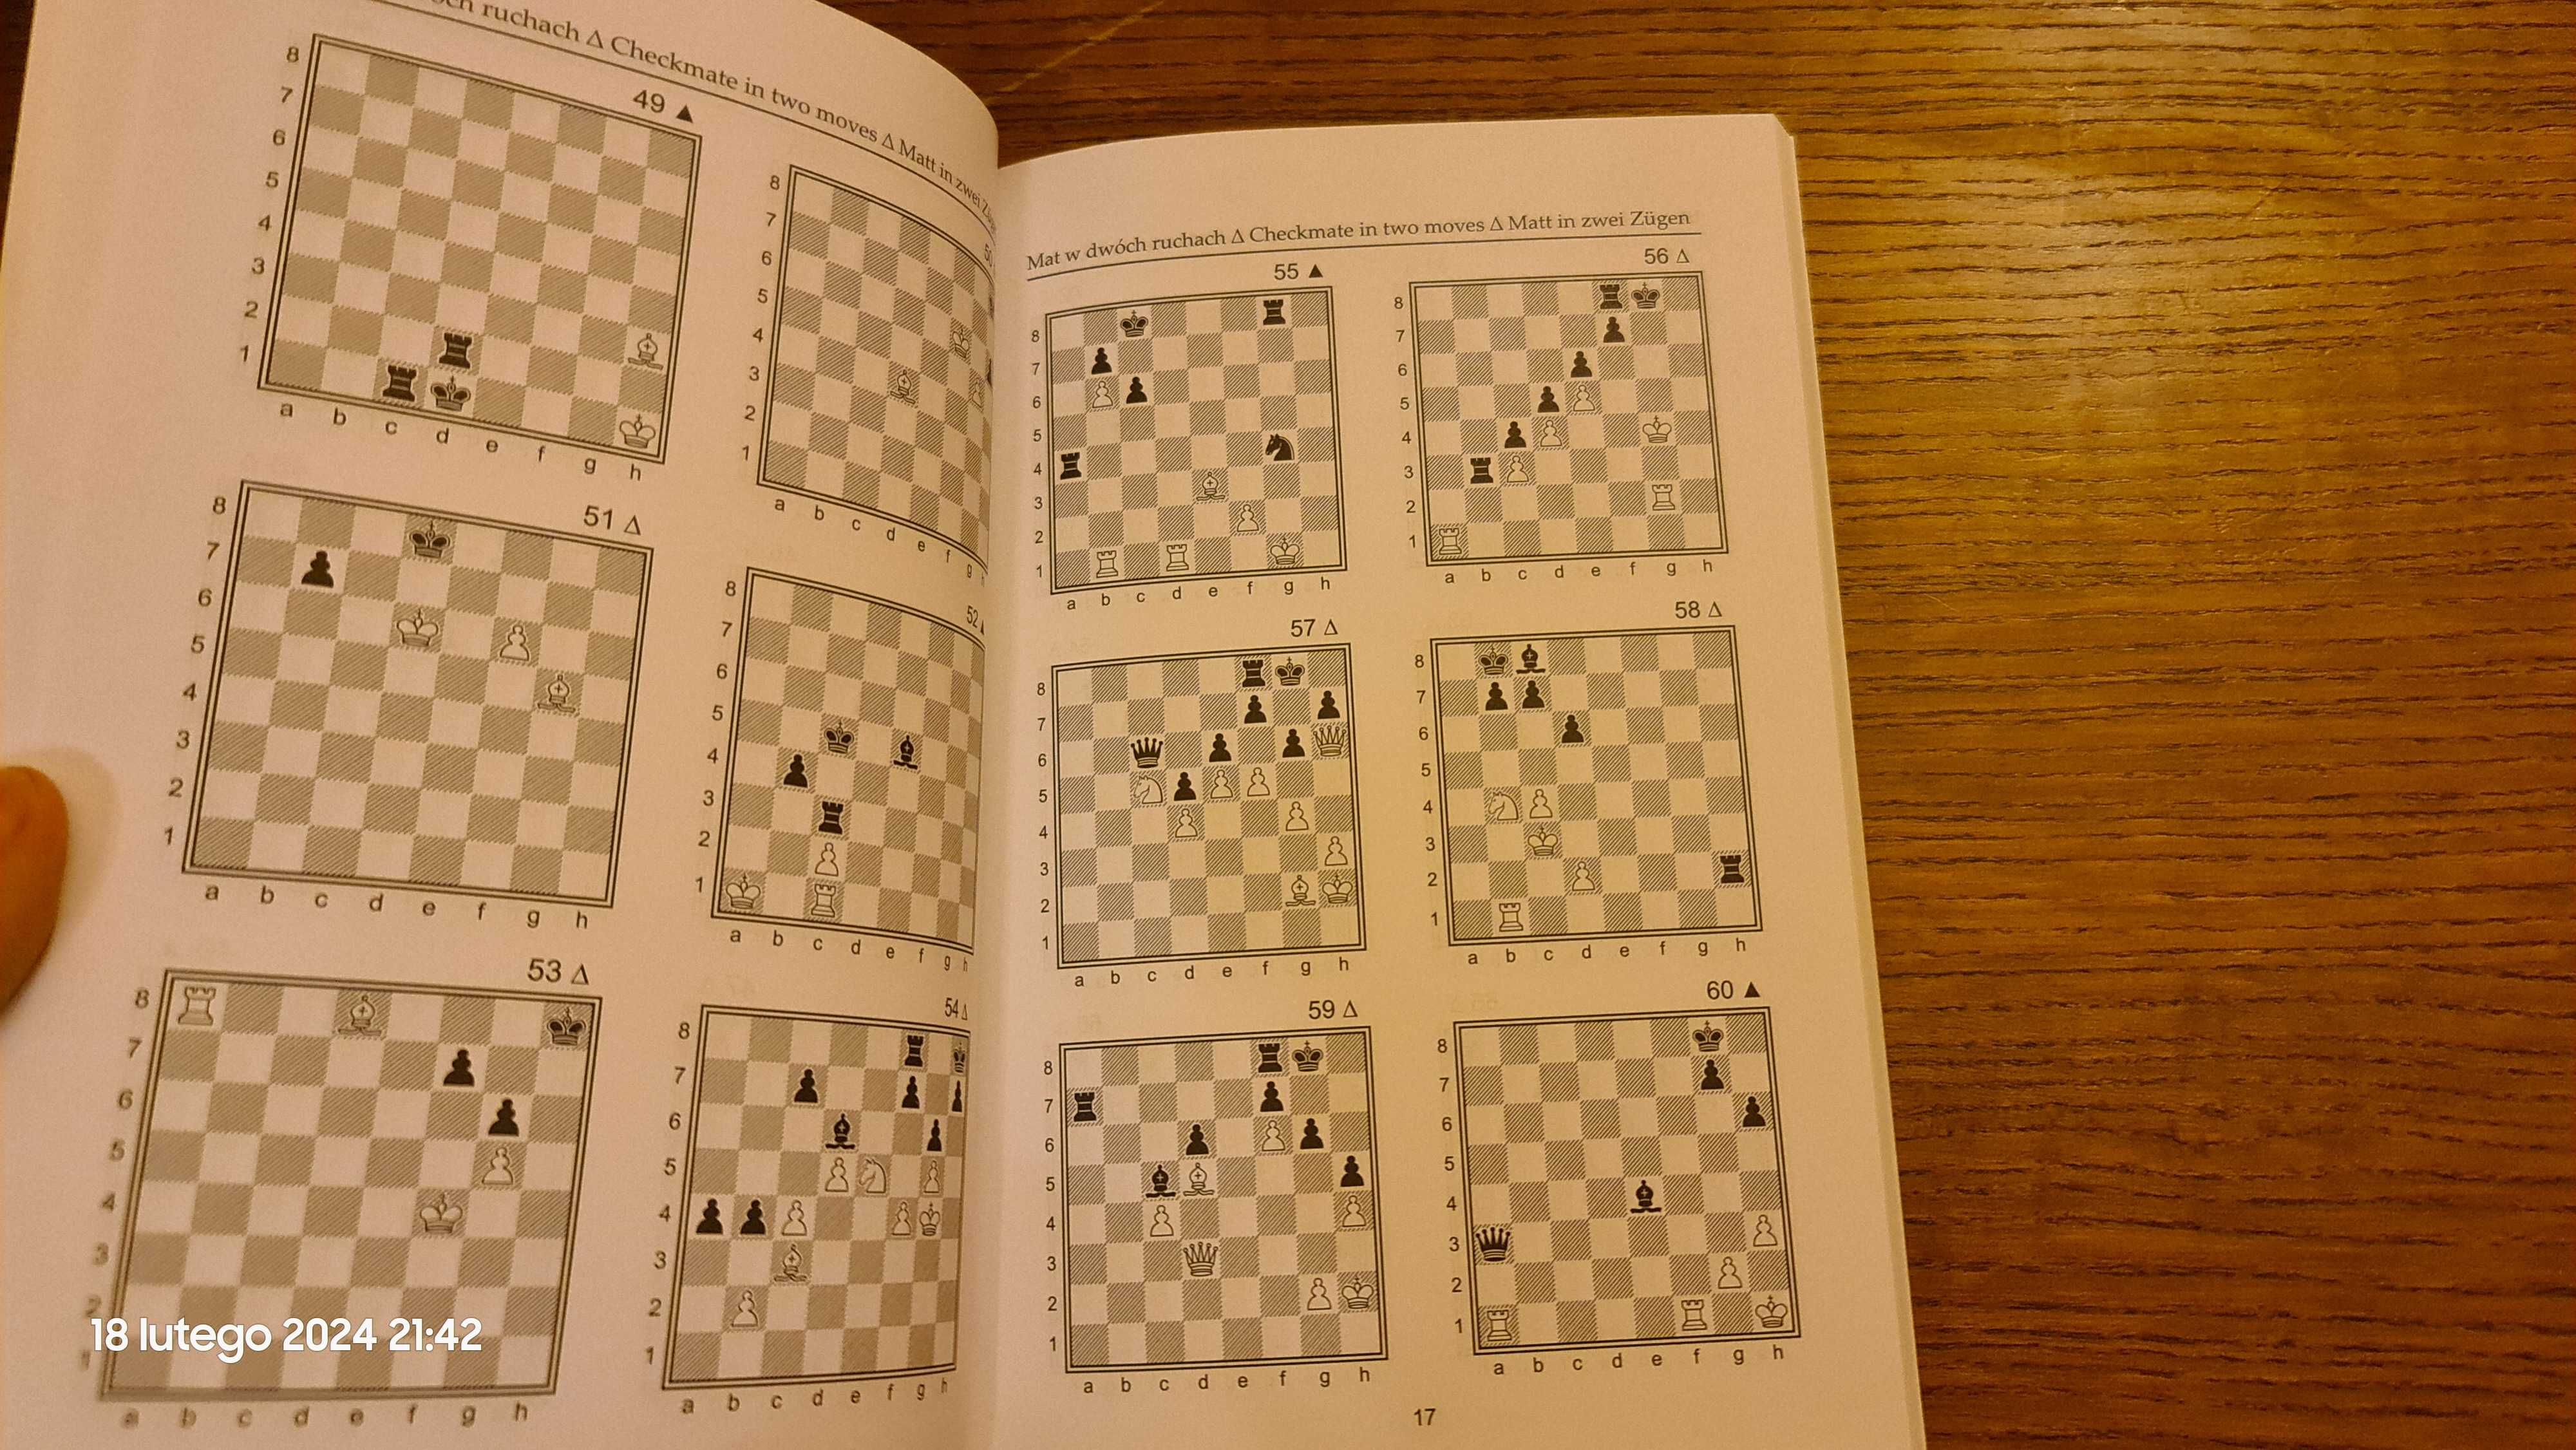 Pierwszy i drugi krok do szachowego mistrzostwa 2 książki M.Sroczyński